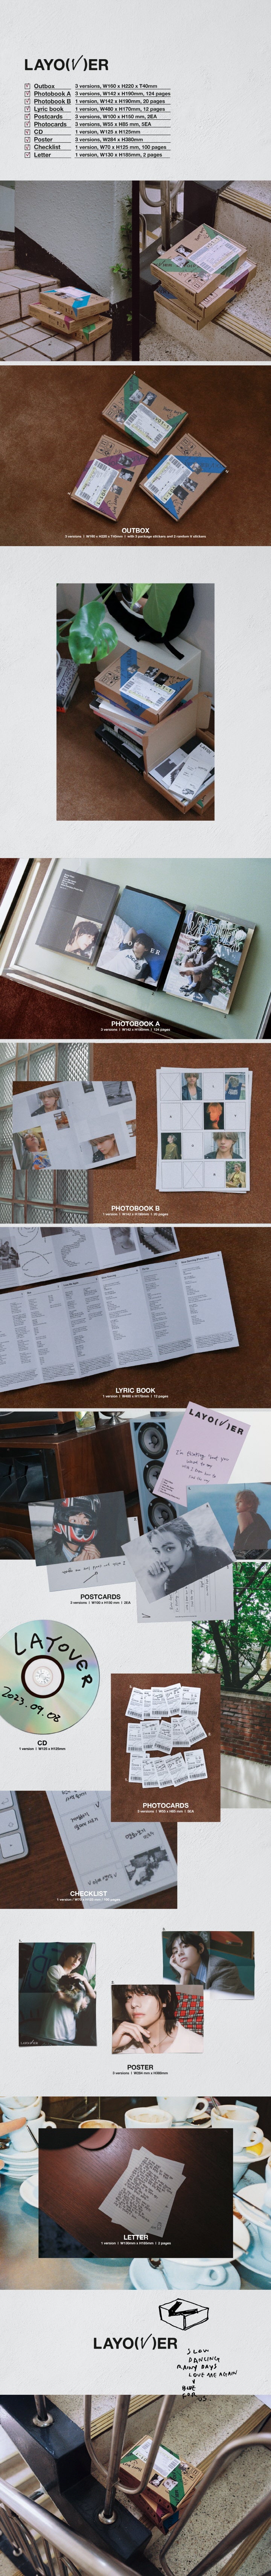 V (BTS) - [Layover] (Solo Album Photobook Version 3) – kpopalbums.com